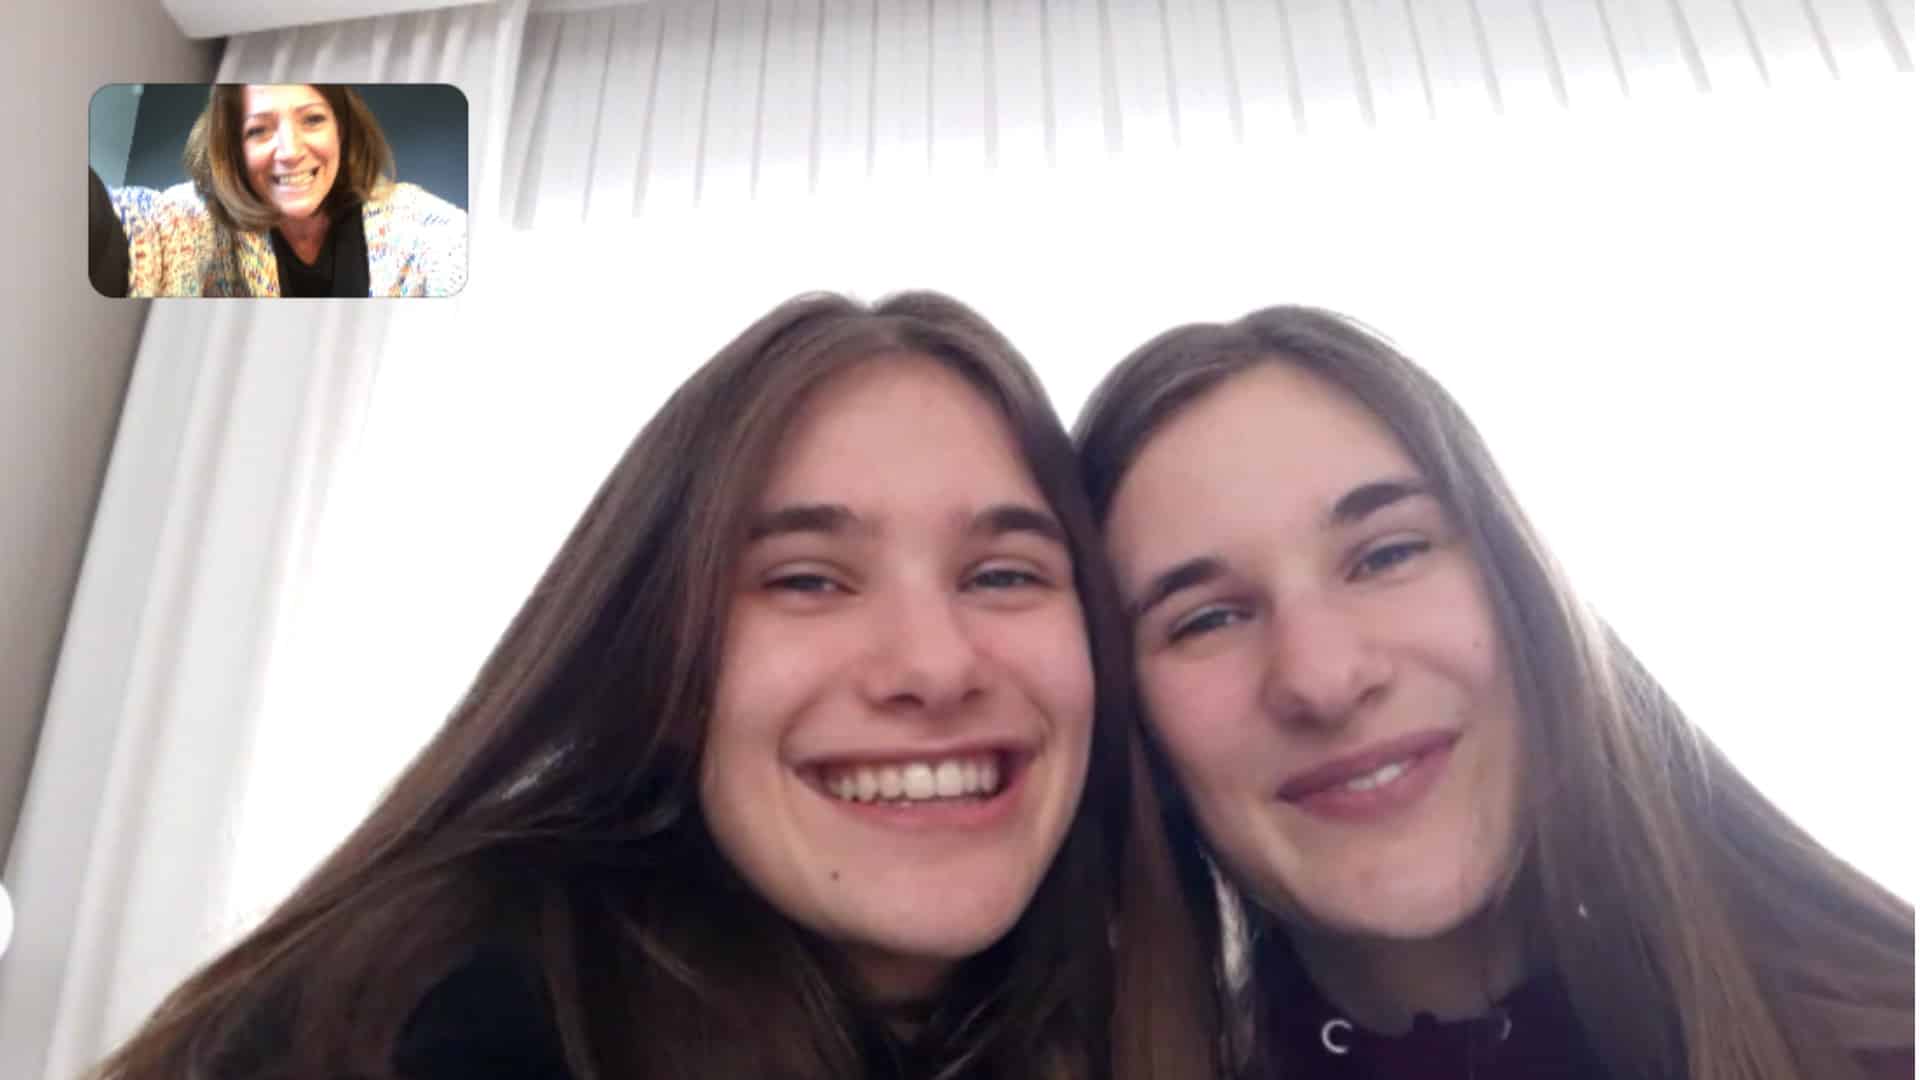 Tieners over vriendschap tijdens de coronacris: 'Zo'n videochat mist gezelligheid'